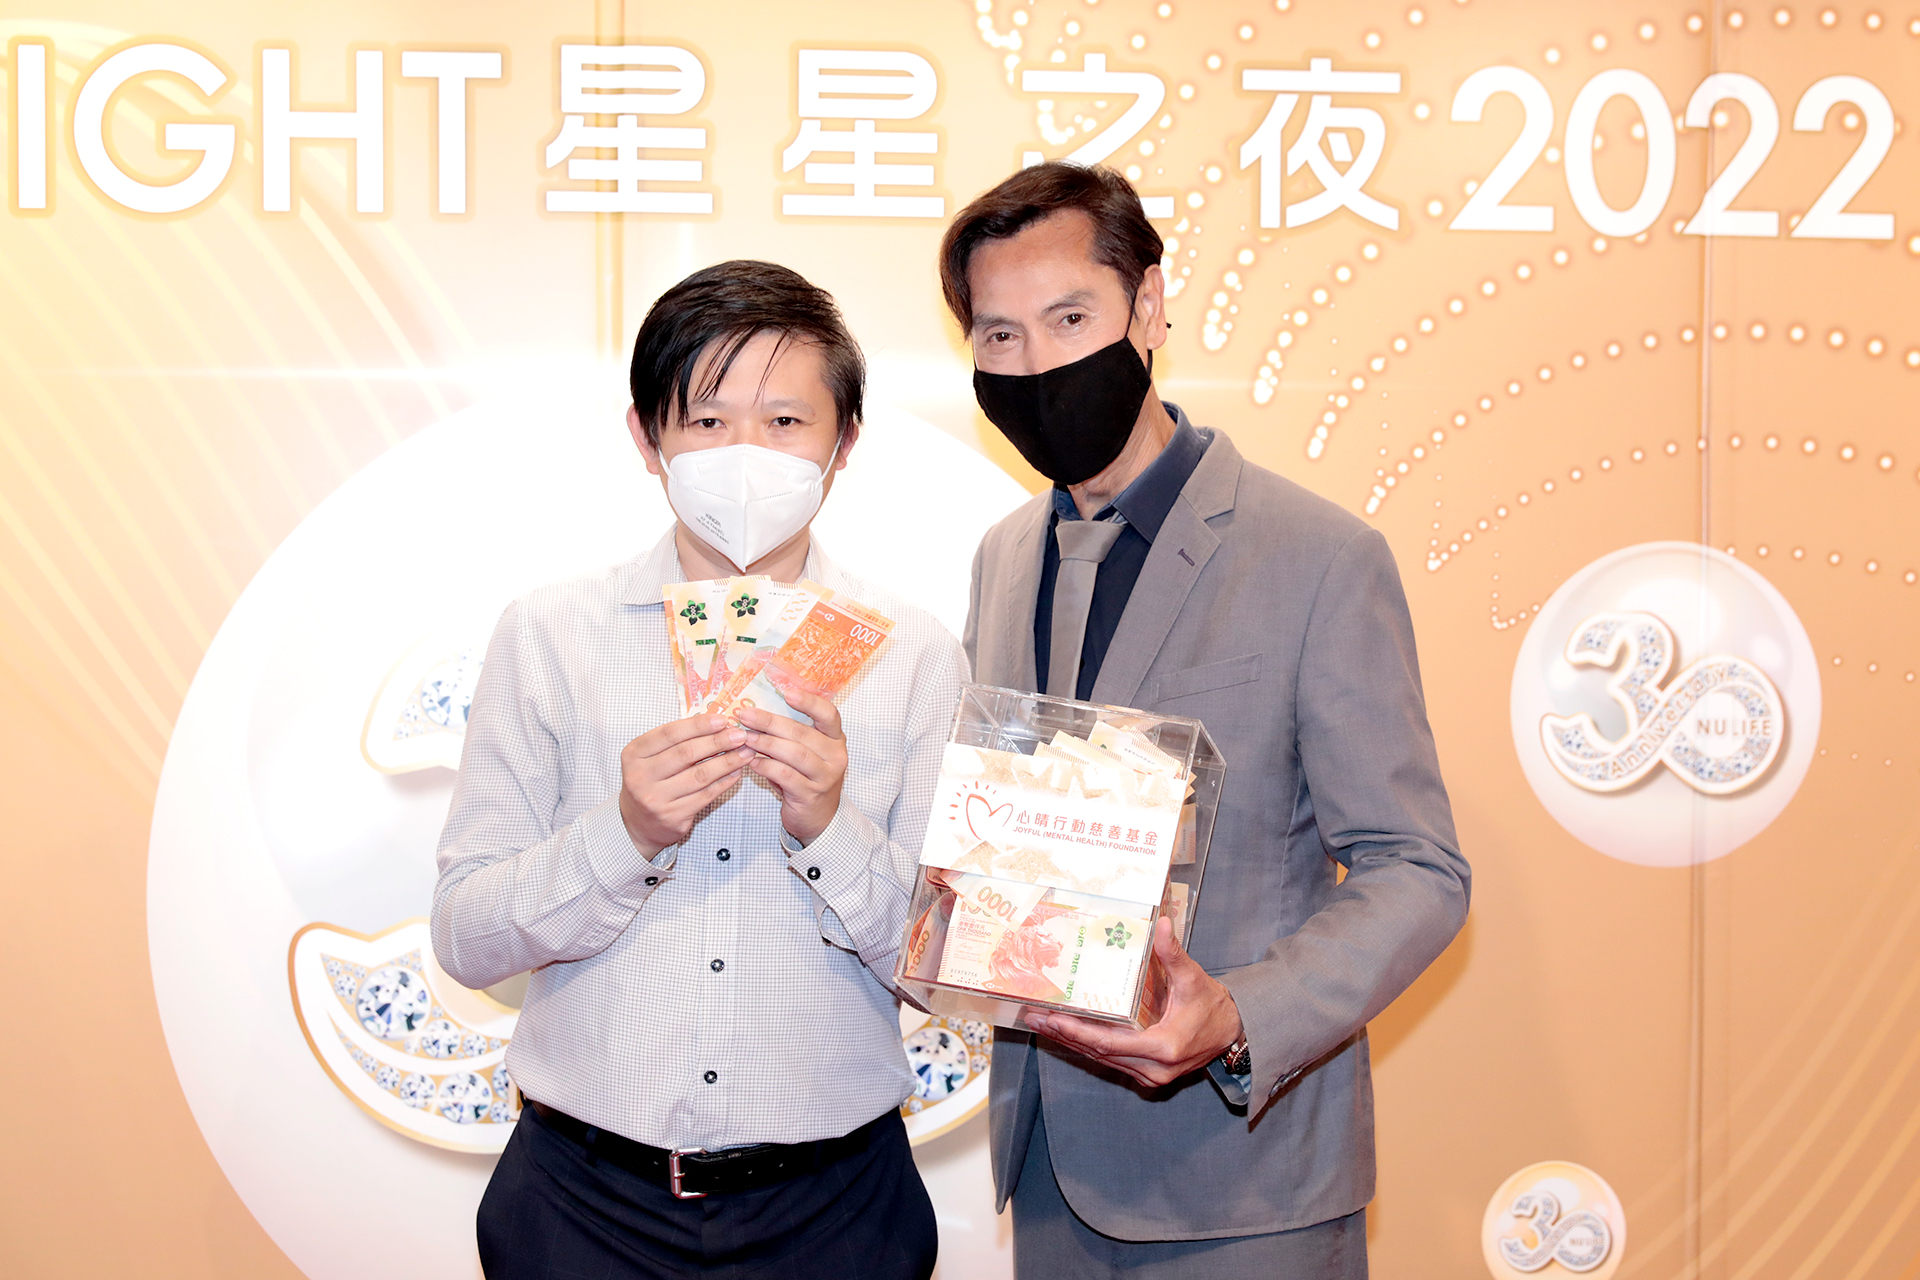 恭賀蔡東明先生從星級百萬富翁遊戲贏取HK$10,000獎金並與公司合共捐助HK$10000予「心晴行動慈善基金」